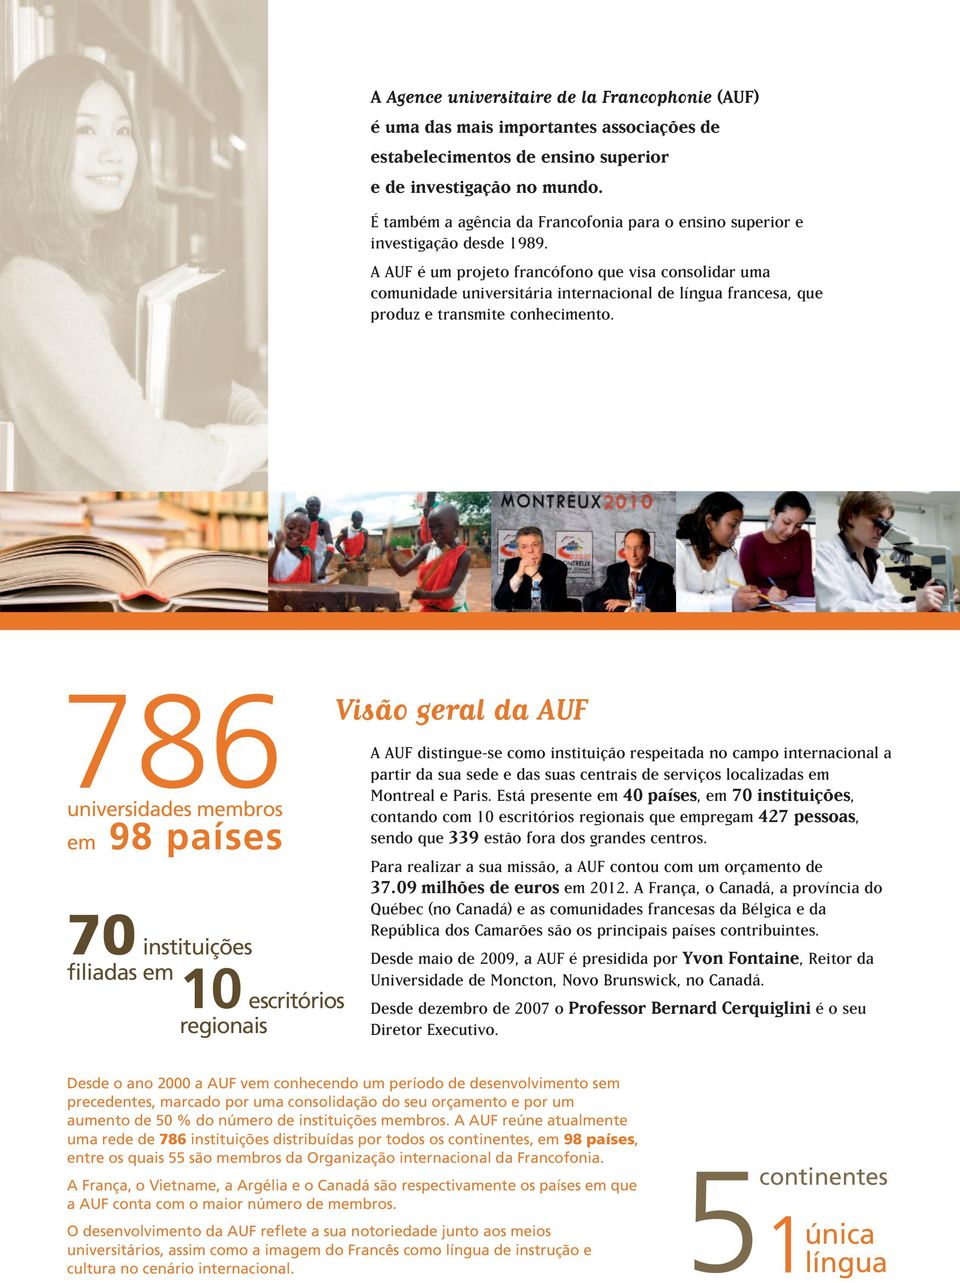 A AUF é um projeto francófono que visa consolidar uma comunidade universitária internacional de língua francesa, que produz e transmite conhecimento.